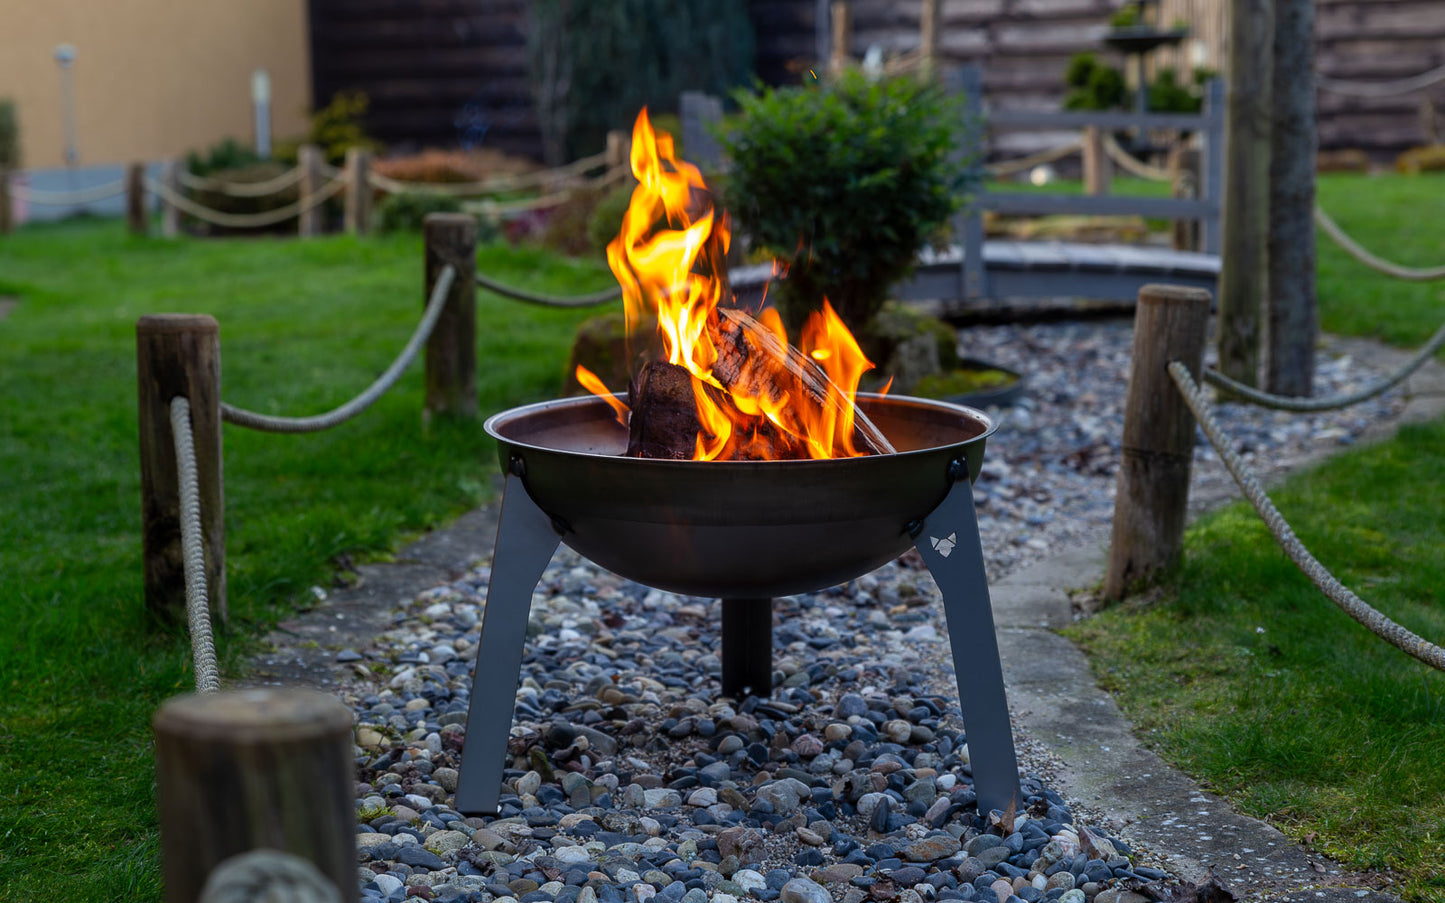 Feuerschale Rustic mit loderndem Feuer auf Kiesbett in einem schön angelegten Garten.